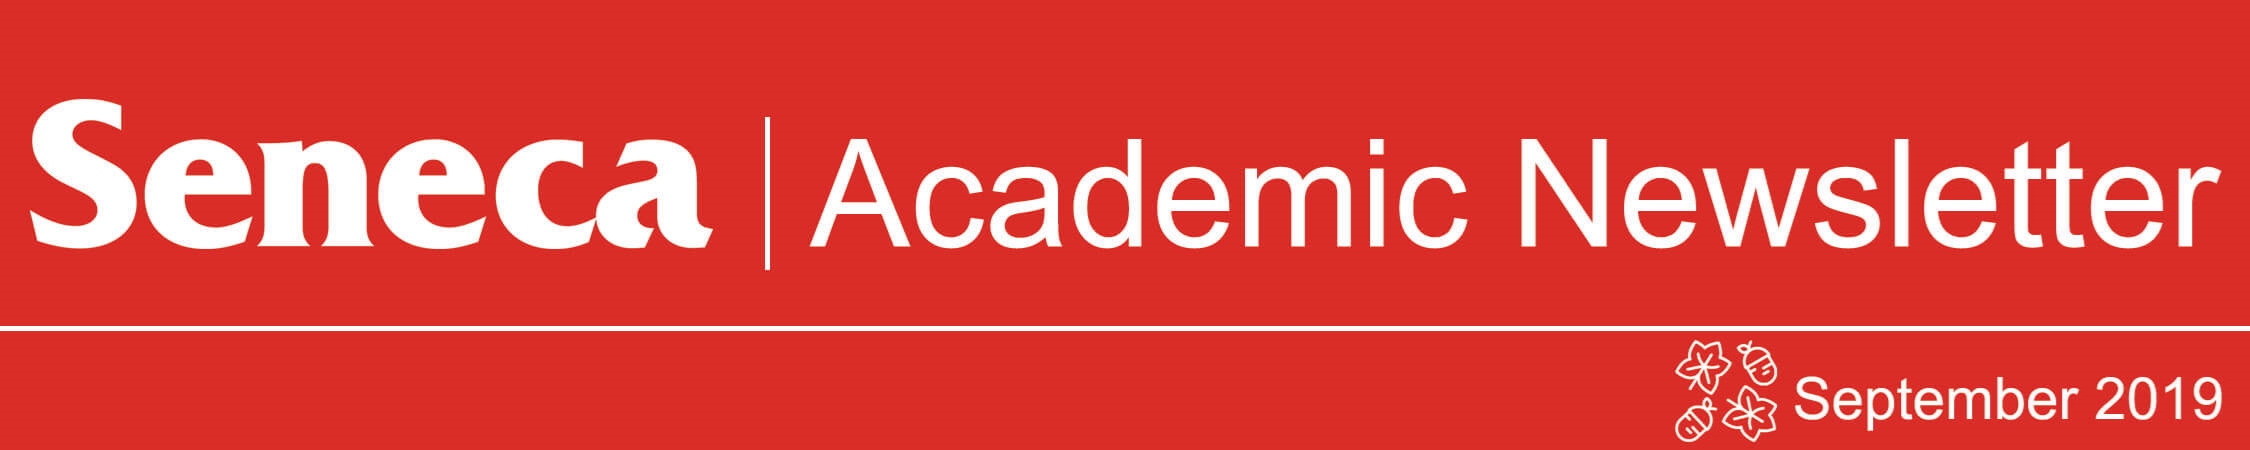 The header logo for the September 2019 issue of the Academic Newsletter